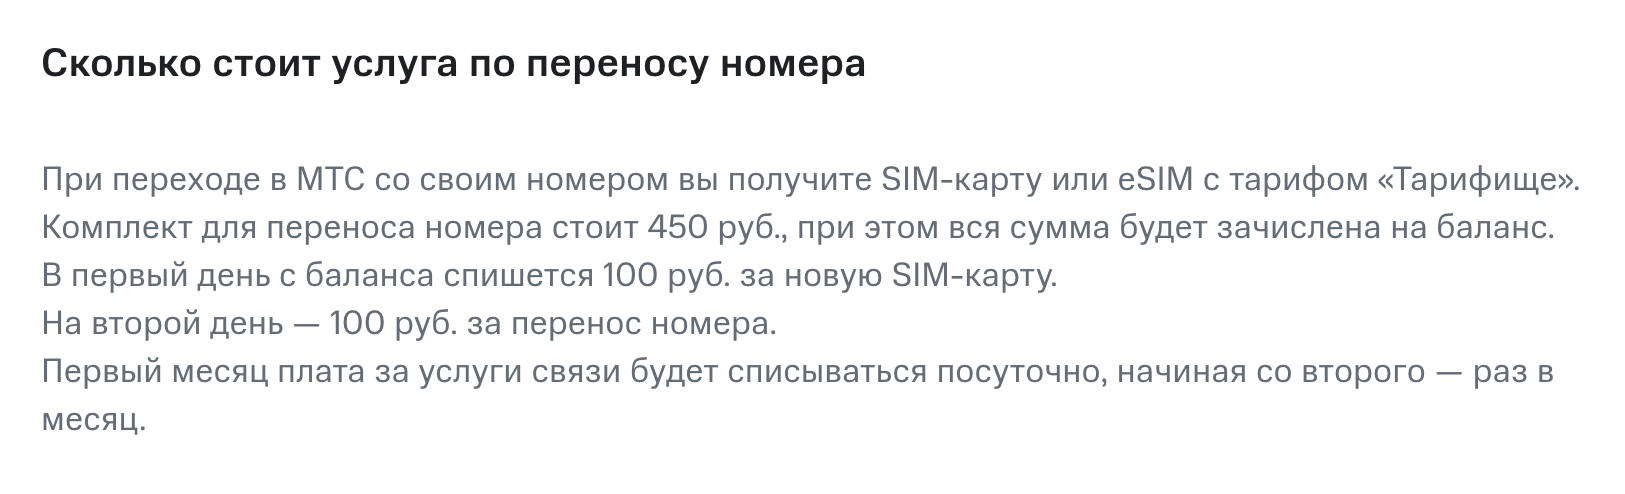 Перенести номер в МТС стоит 100 ₽, и еще 100 ₽ возьмут за новую симкарту. Источник: mts.ru